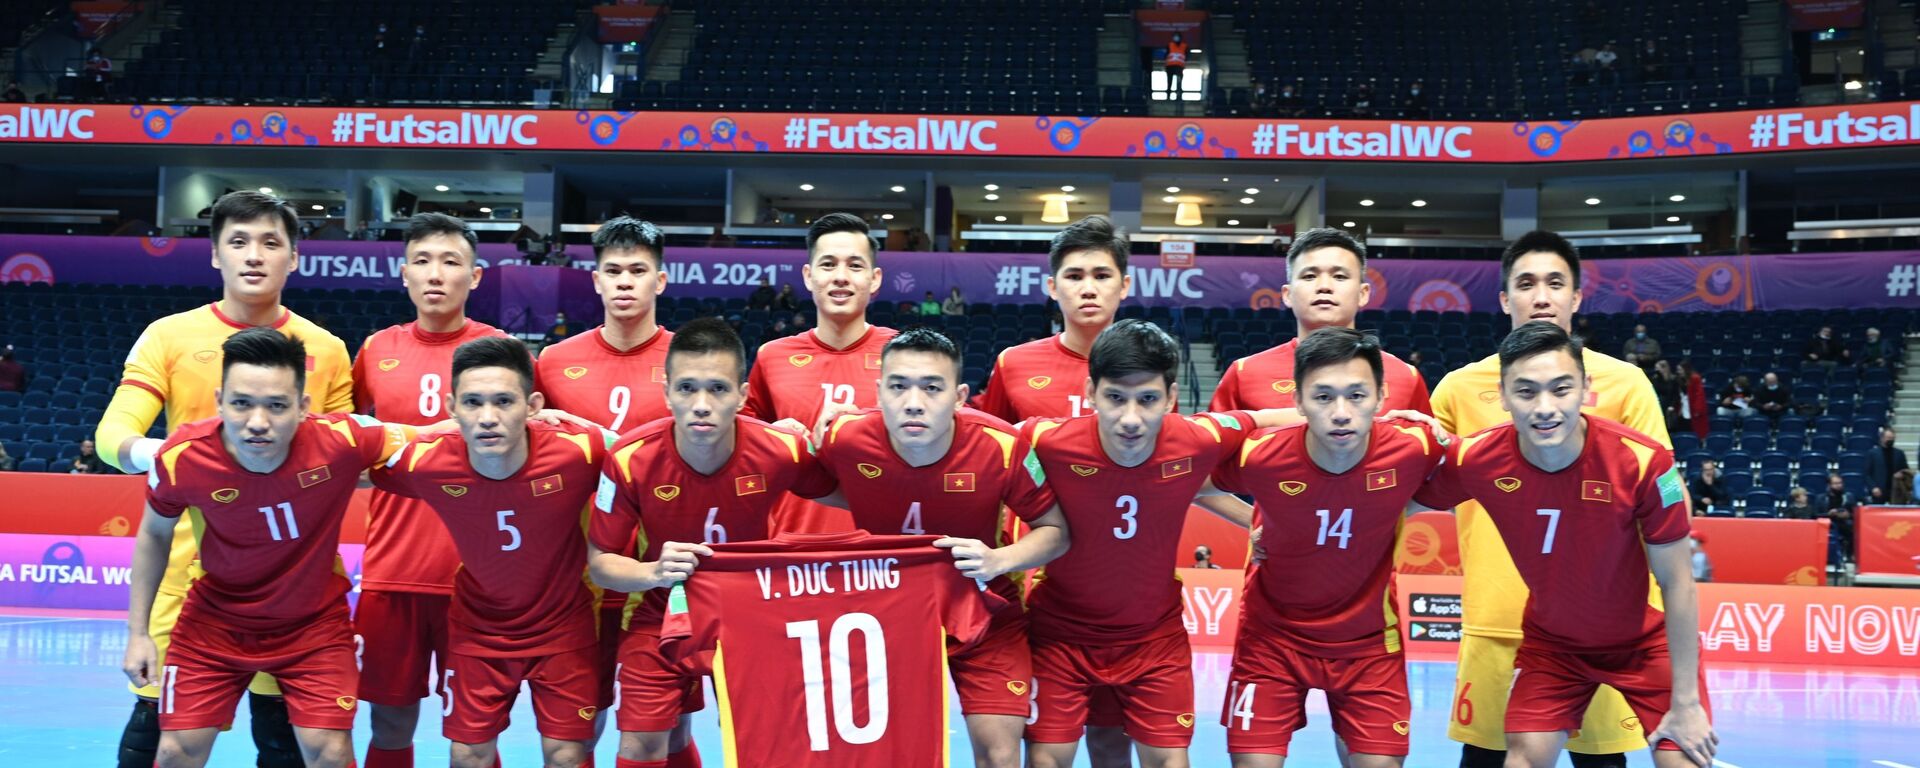 VCK Futsal World Cup 2021: Thua sát nút Á quân thế giới, tuyển Việt Nam chia tay World Cup futsal 2021 - Sputnik Việt Nam, 1920, 04.10.2021